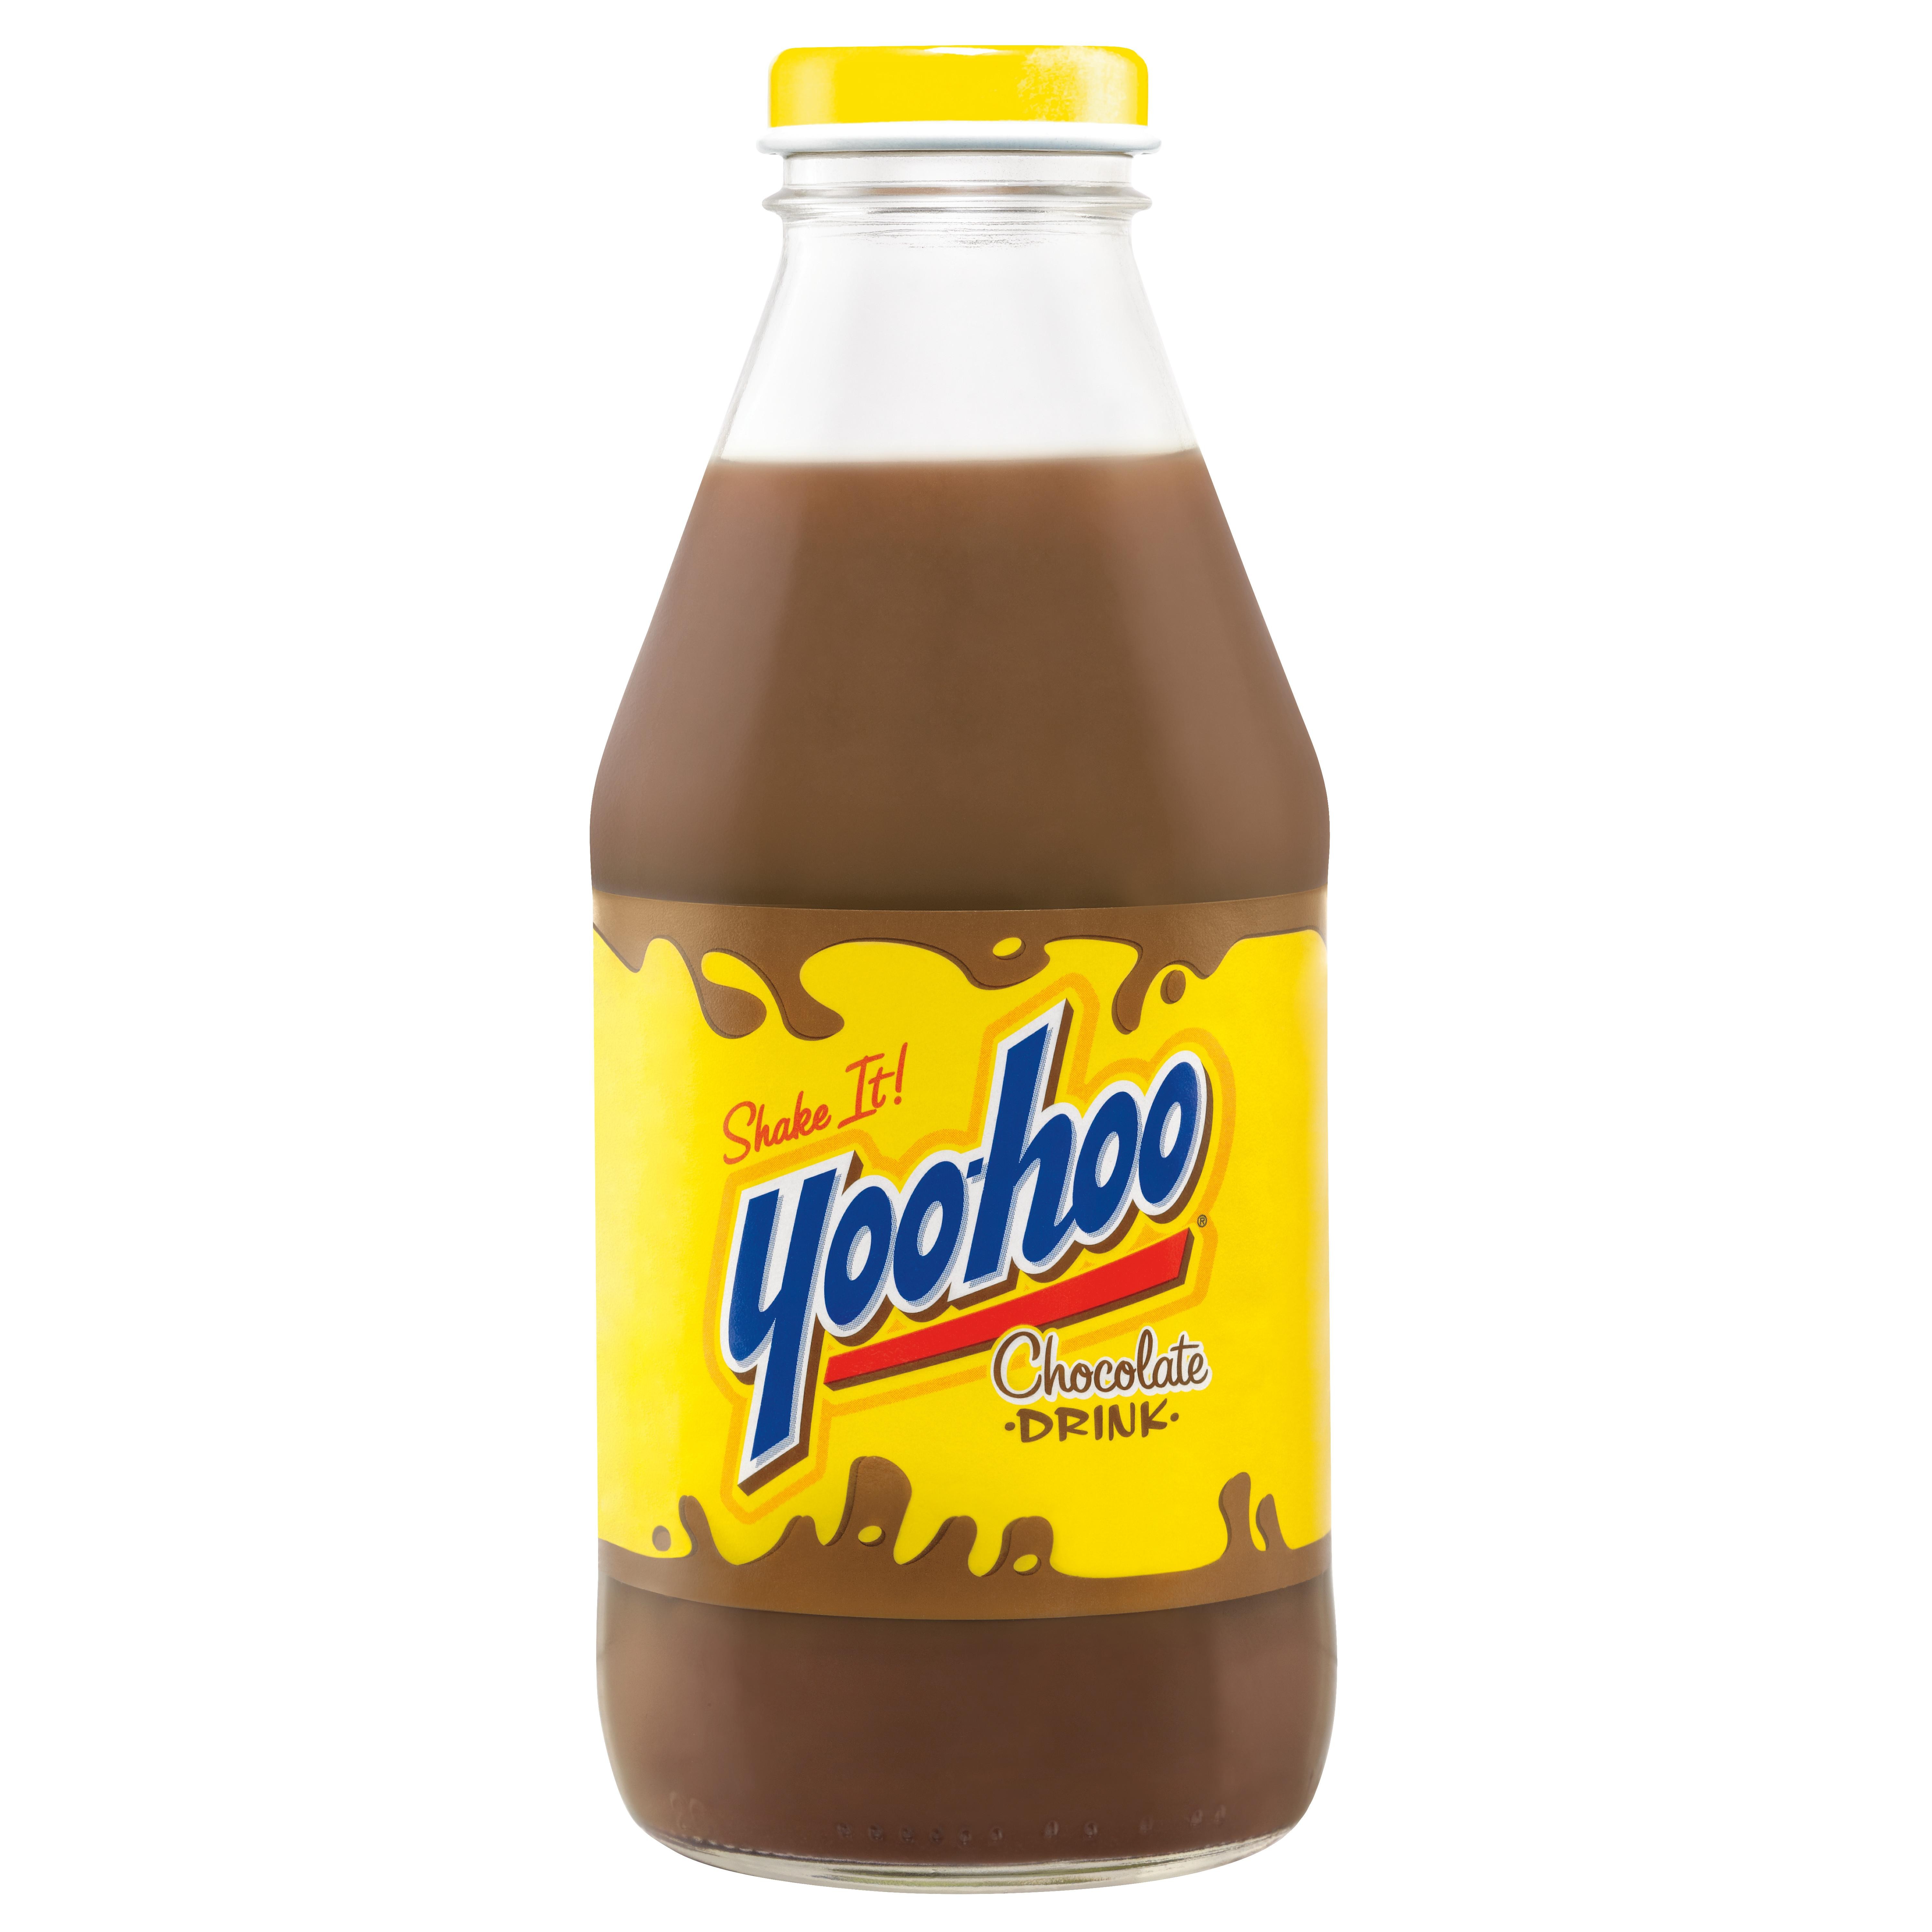 Yoohoo Chocolate Drink 15oz Bottle 13.8oz